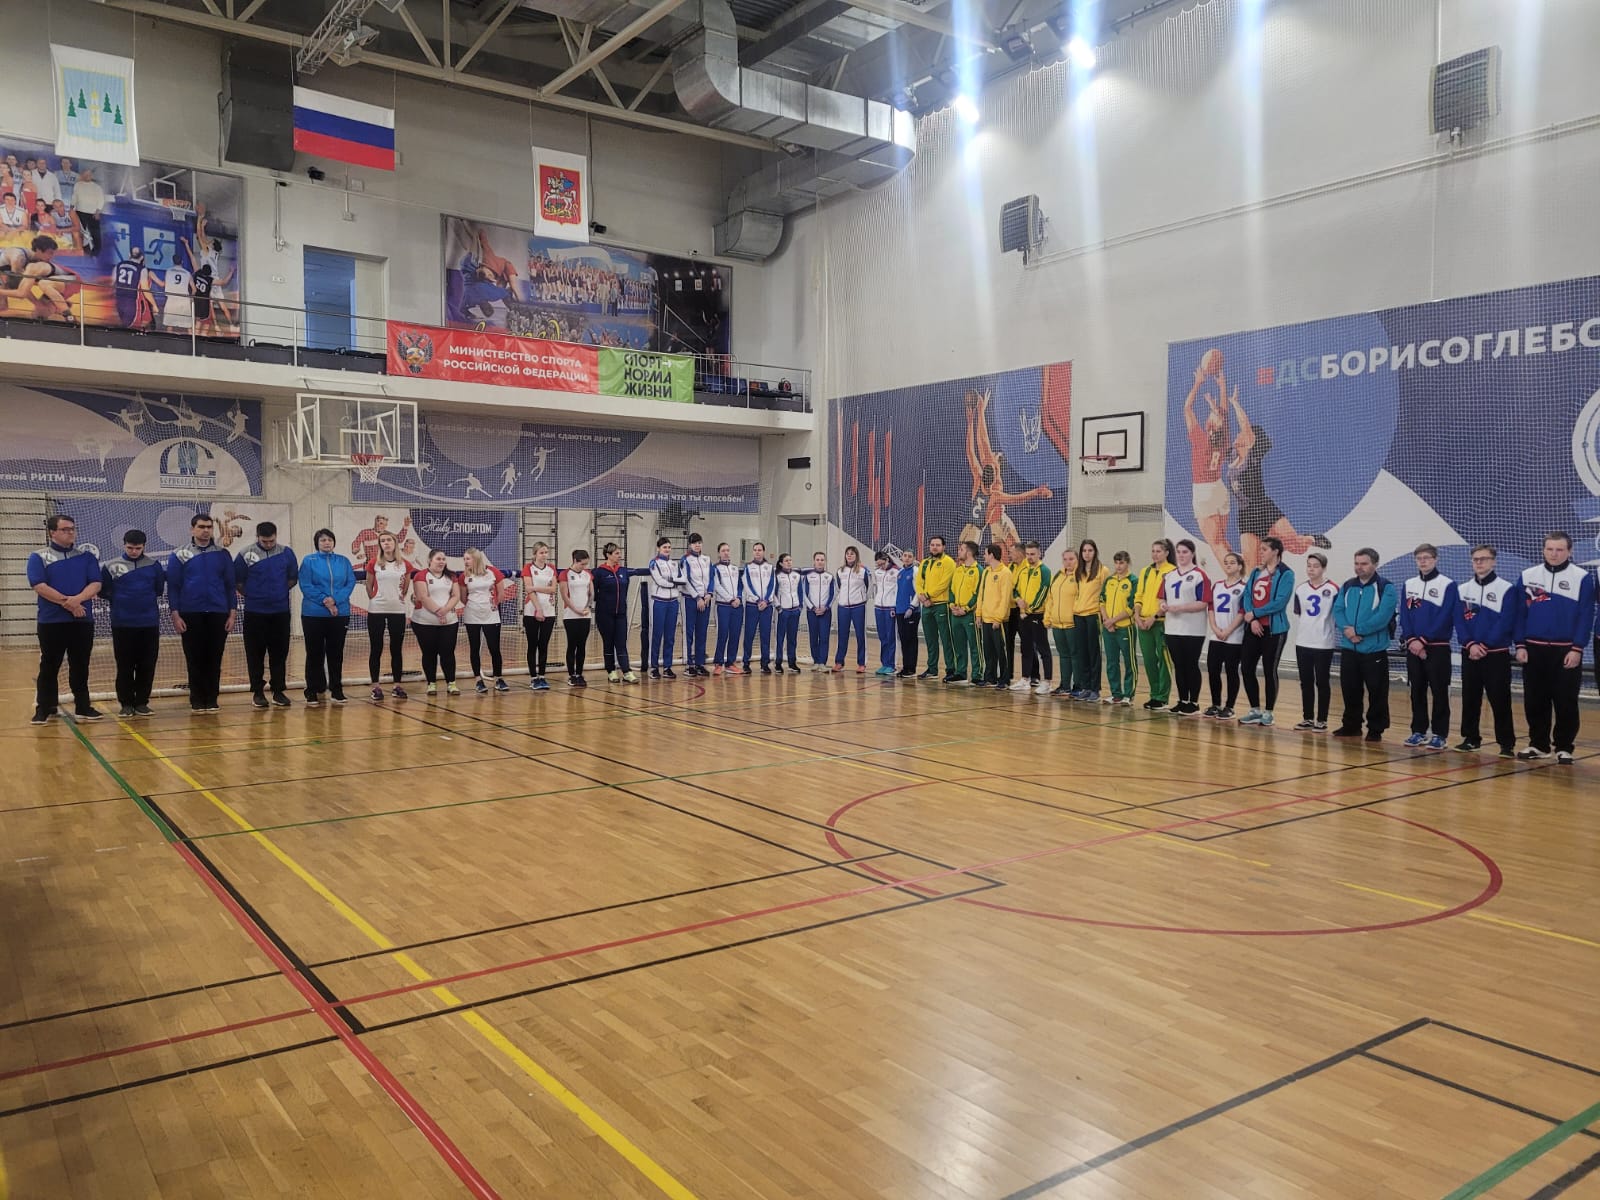 19 команд ведут борьбу за медали чемпионата России по голболу спорта слепых в Раменском